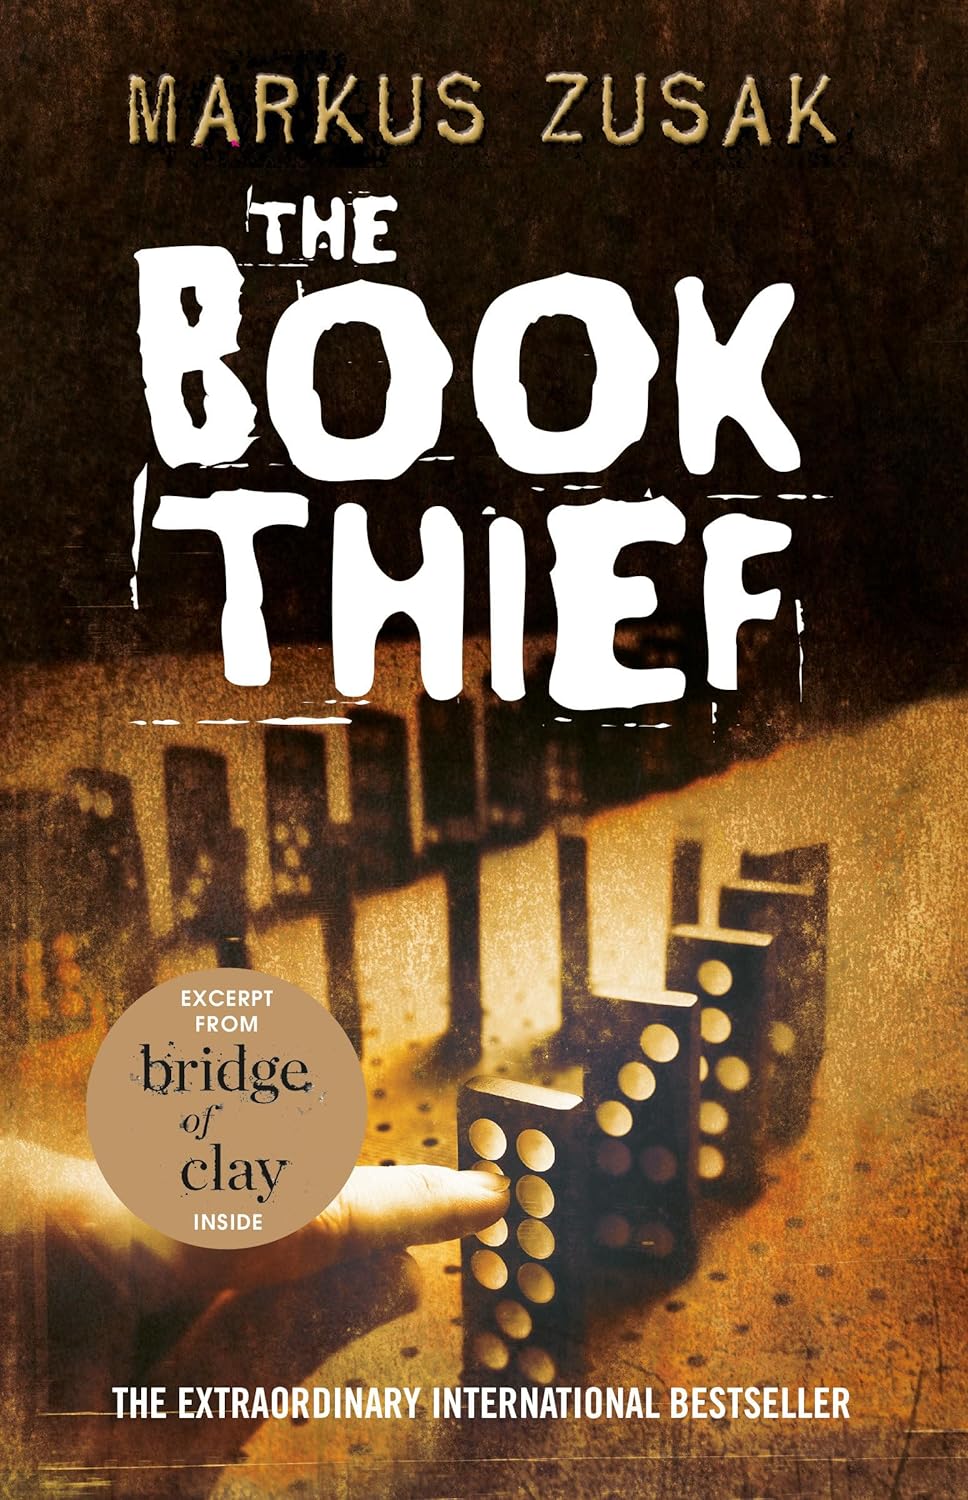 The Book Thief by Markus Zusak (2005)